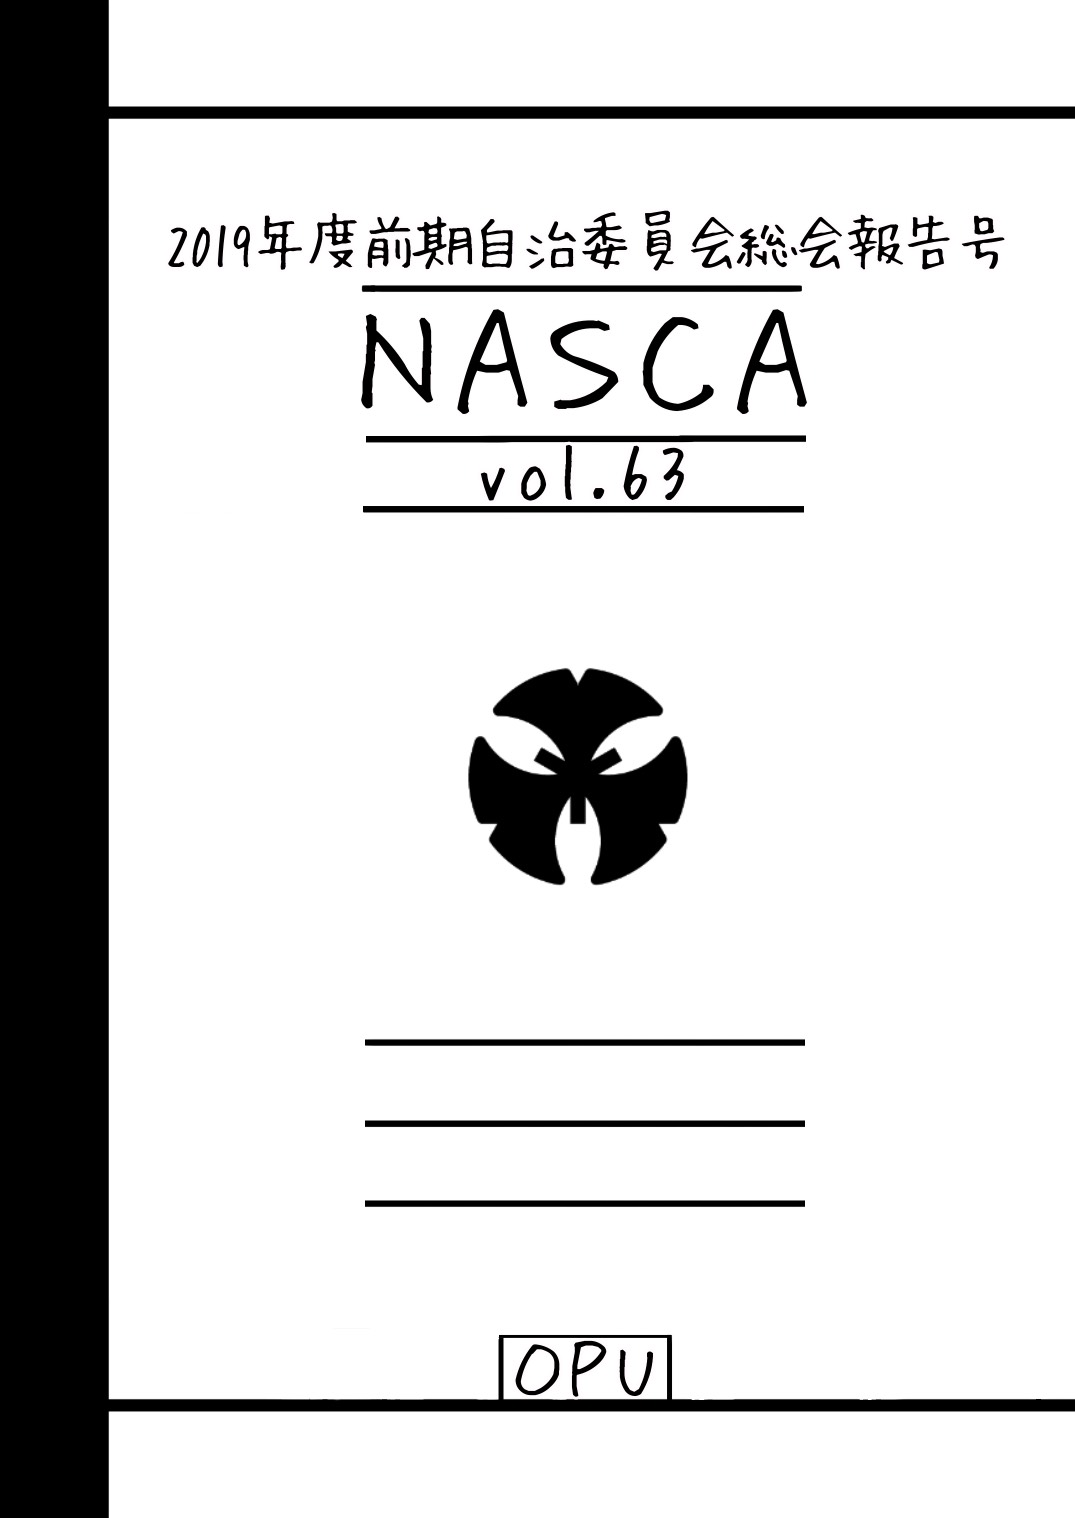 NASCA vol.63表紙